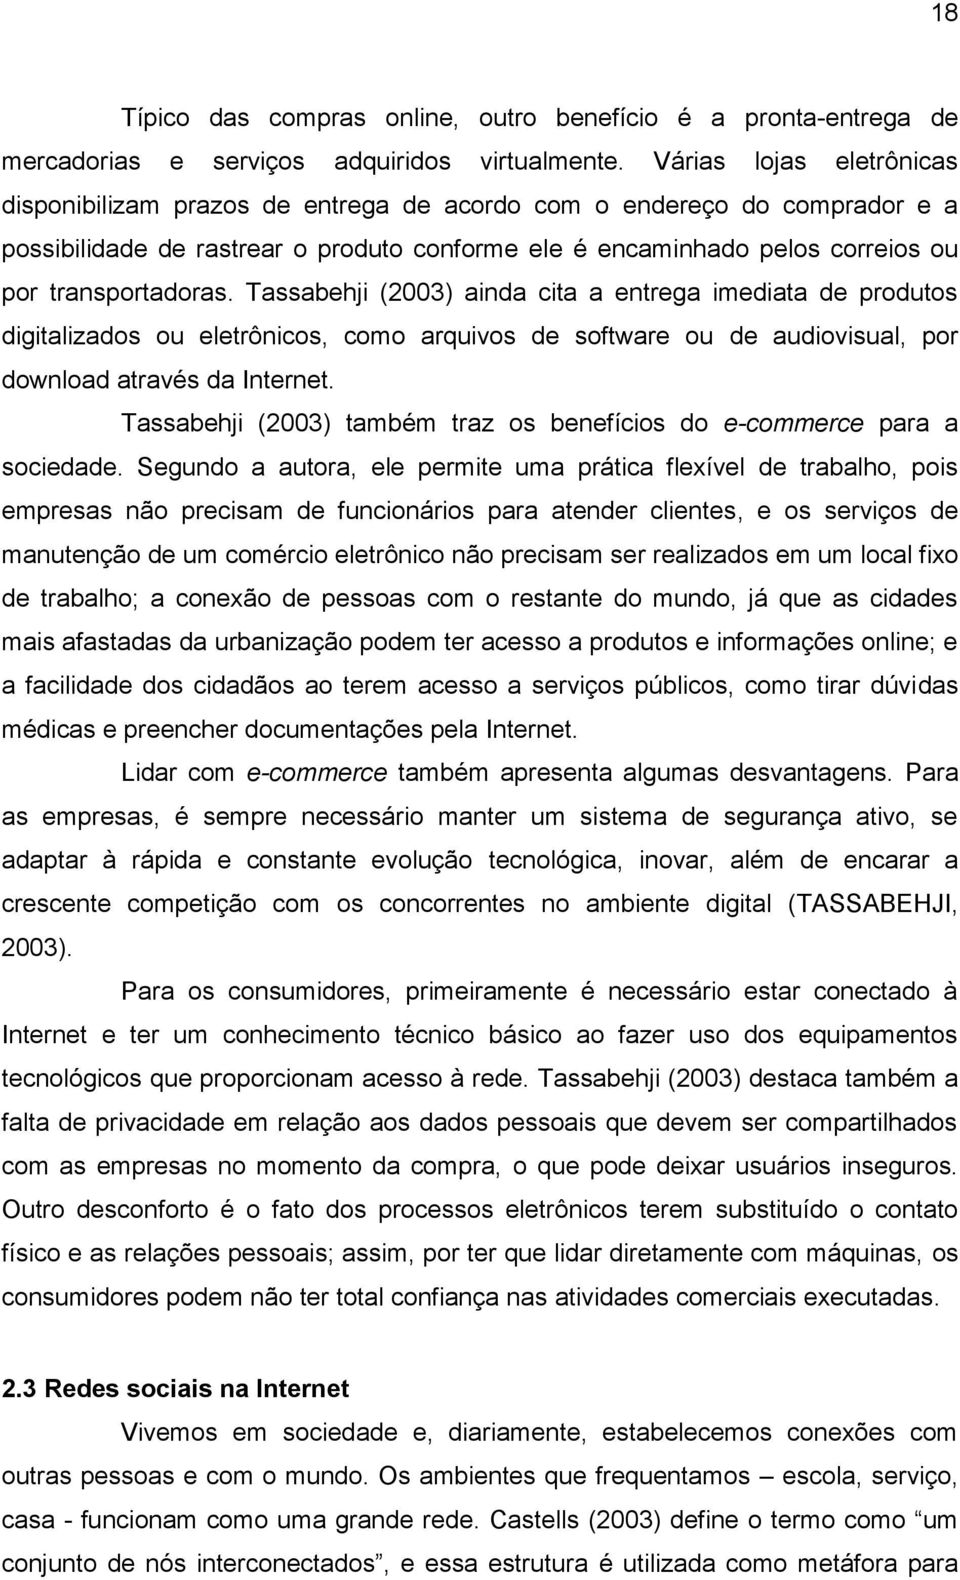 transportadoras. Tassabehji (2003) ainda cita a entrega imediata de produtos digitalizados ou eletrônicos, como arquivos de software ou de audiovisual, por download através da Internet.